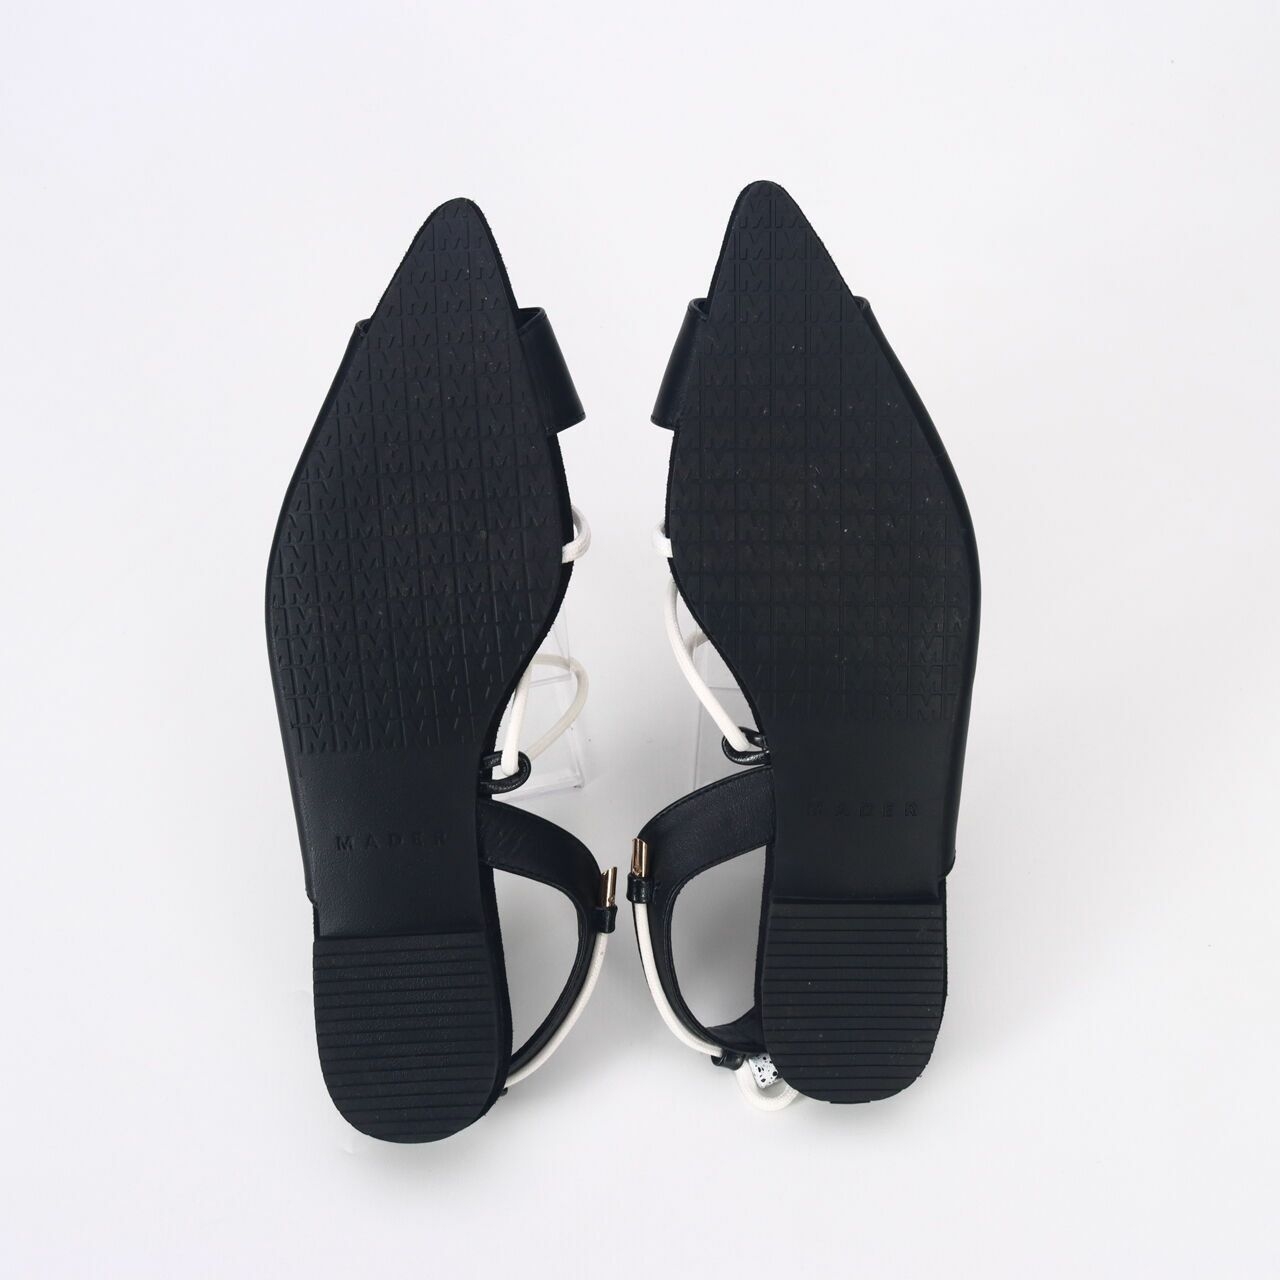 Mader Black Sandals